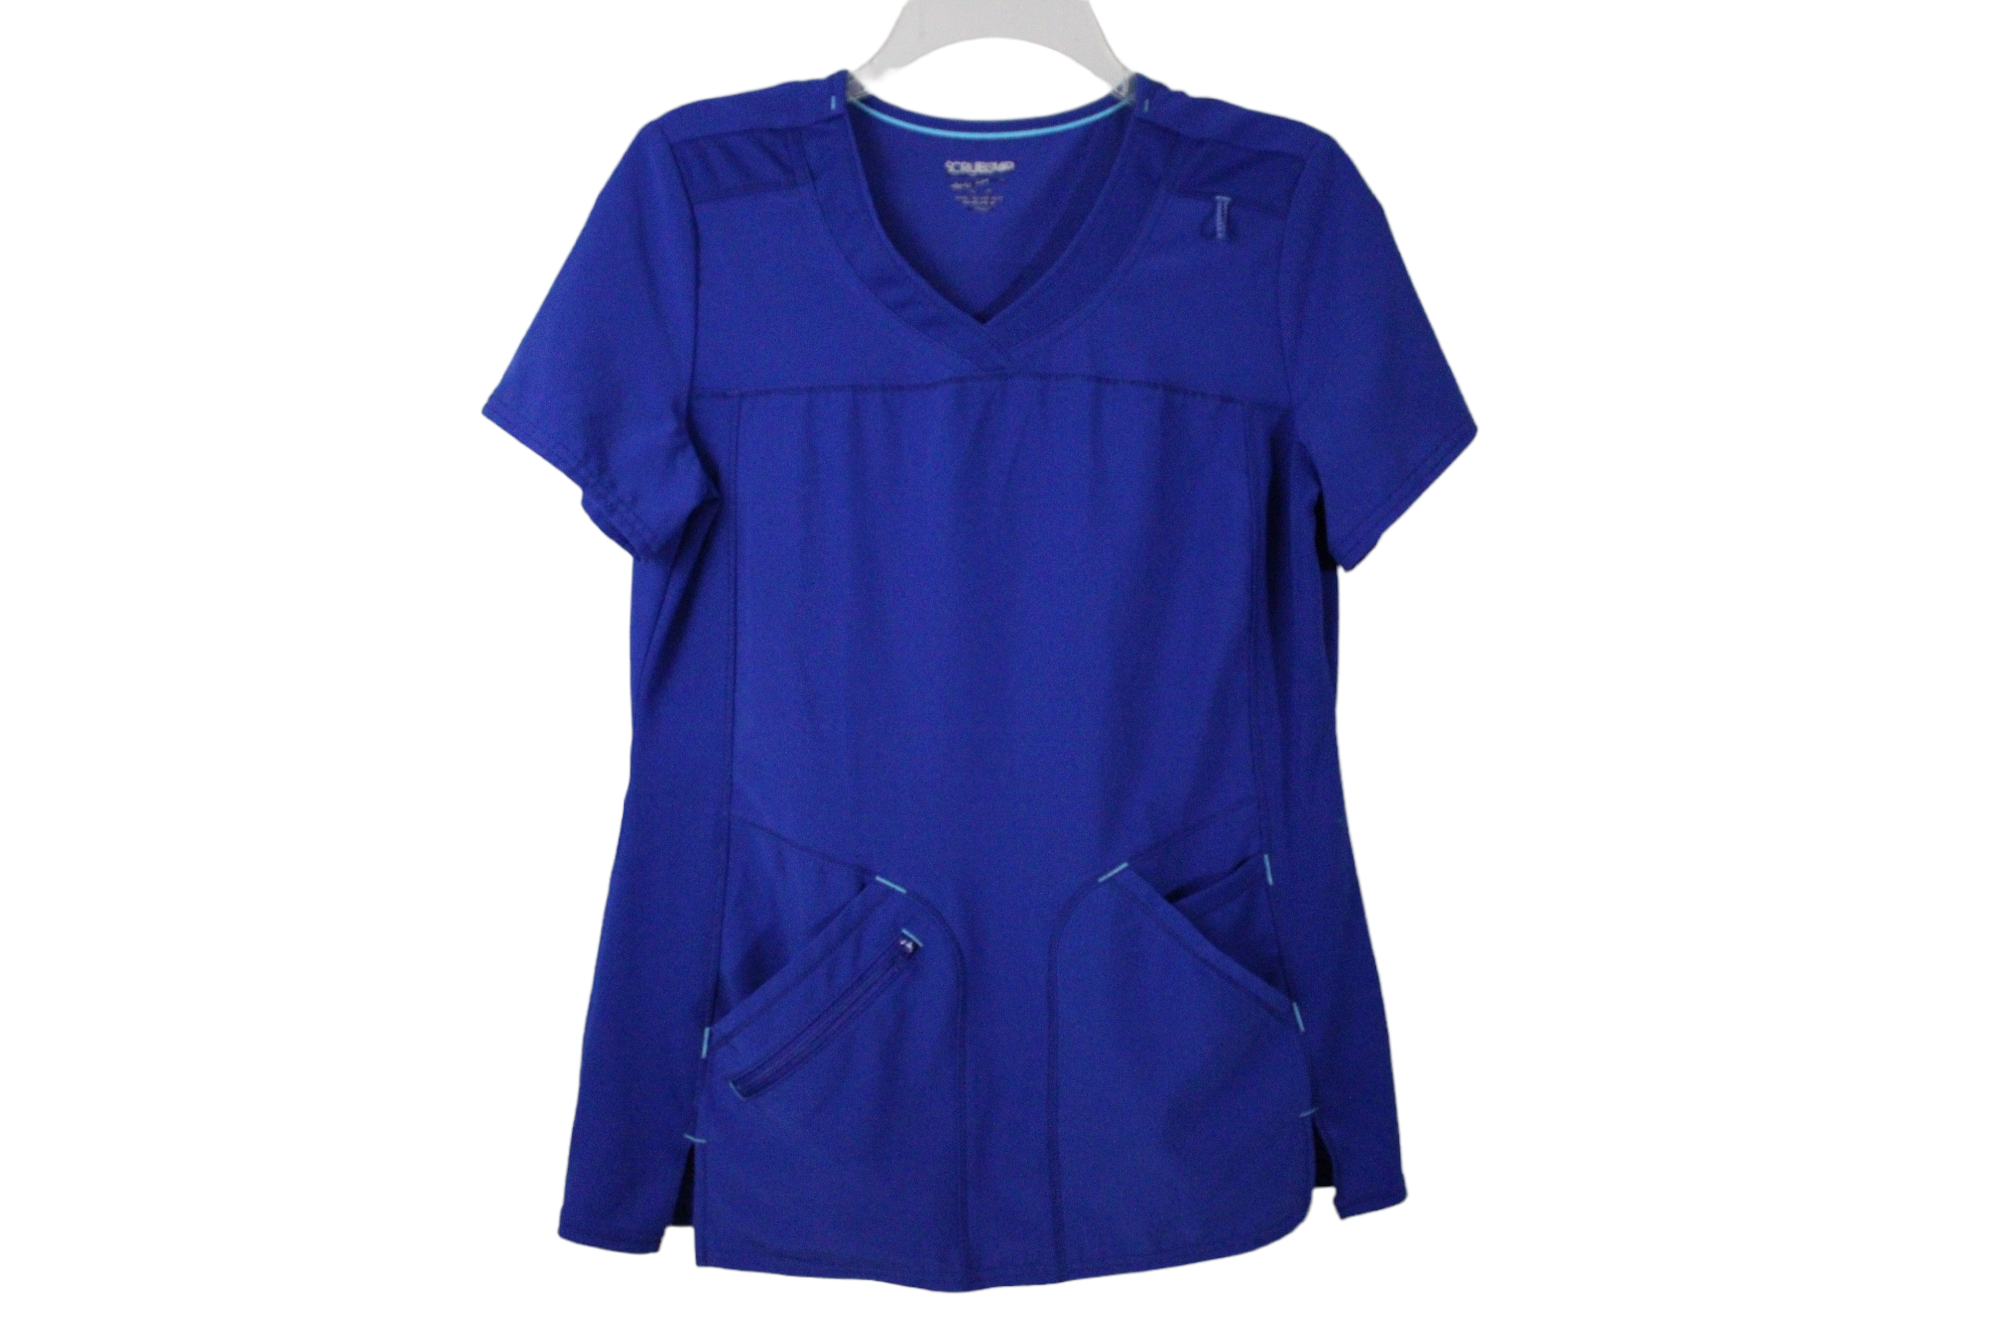 J.Jill Wearever Collection Navy Blue Long Sleeved Shirt